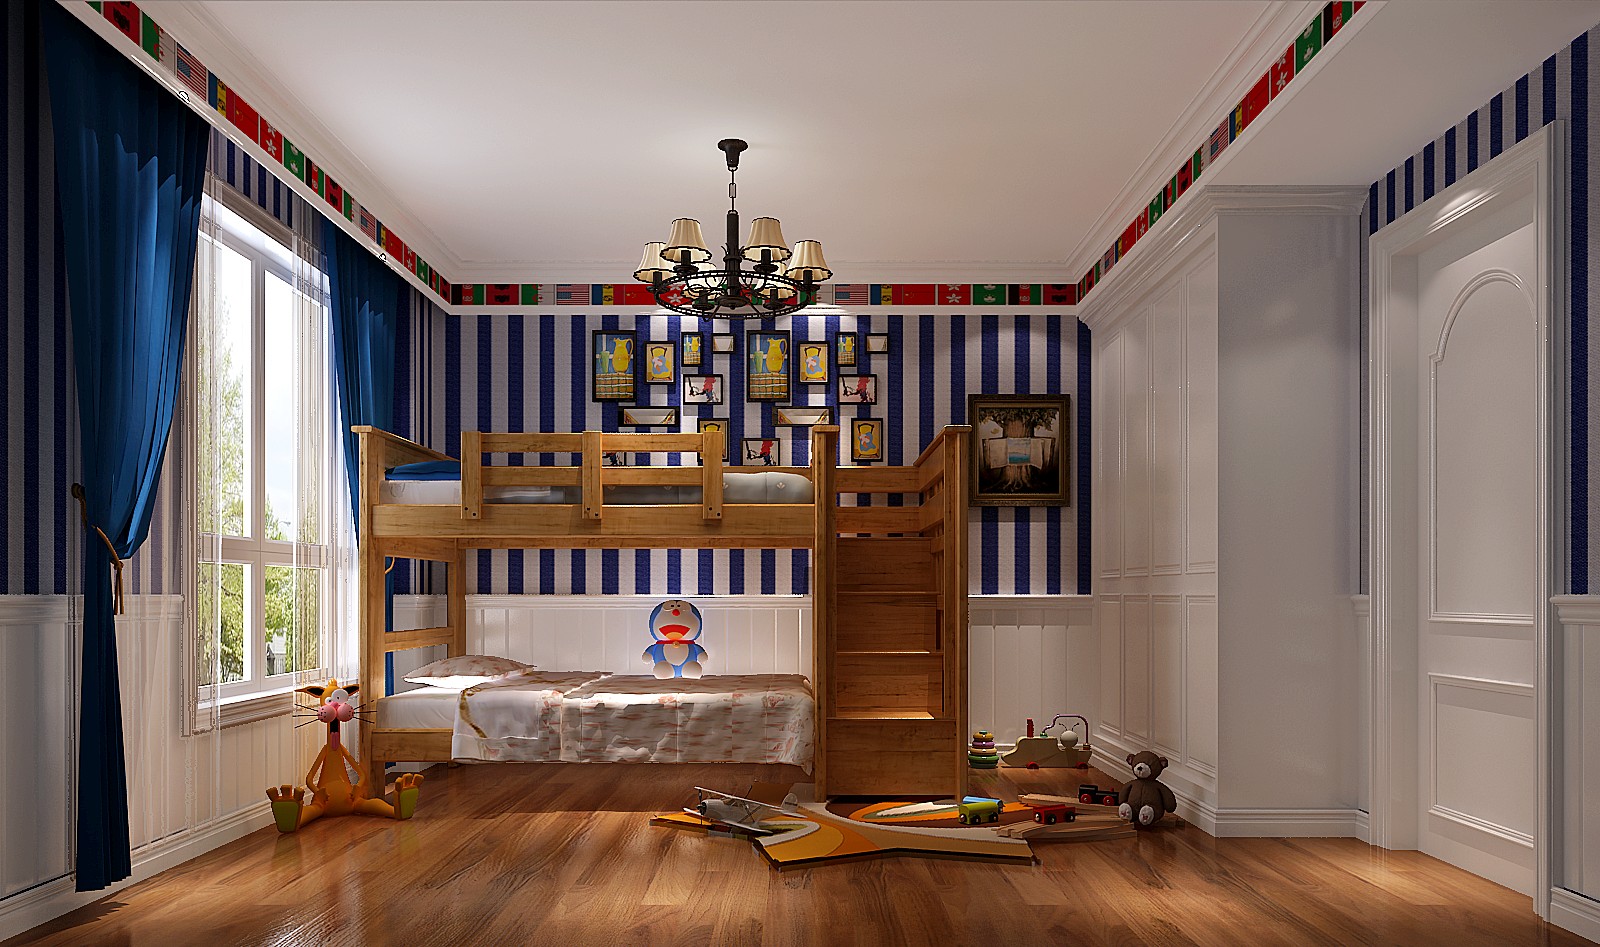 简约 地中海 三居 别墅 白领 80后 小资 欧式 婚房 儿童房图片来自北京高度国际装饰设计在世纪城130平地中海公寓的分享